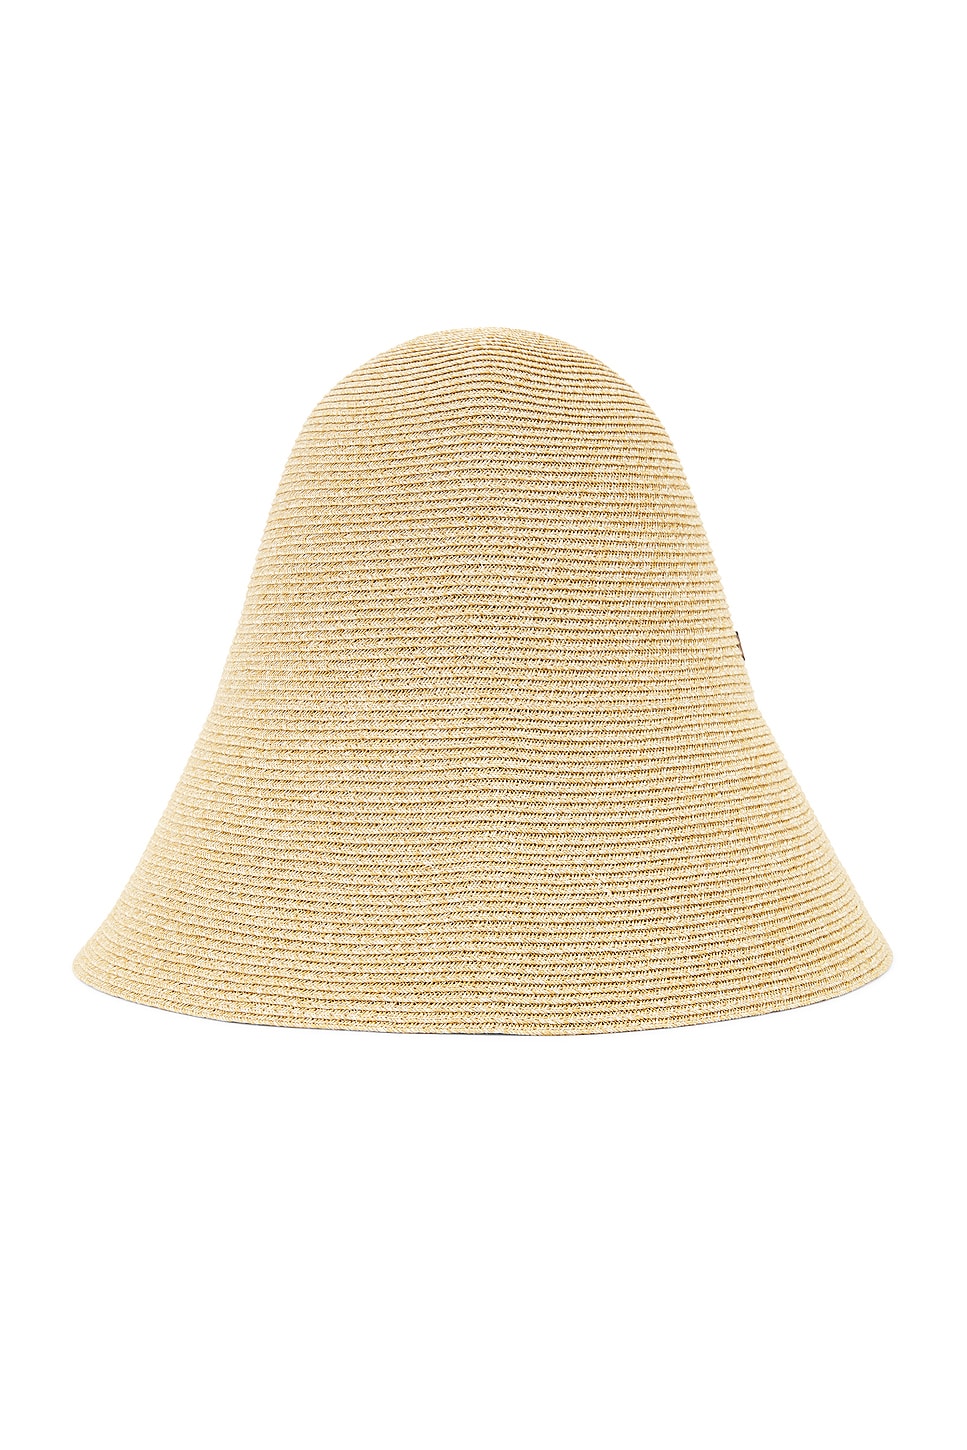 Woven Paper Blend Straw Hat in Beige